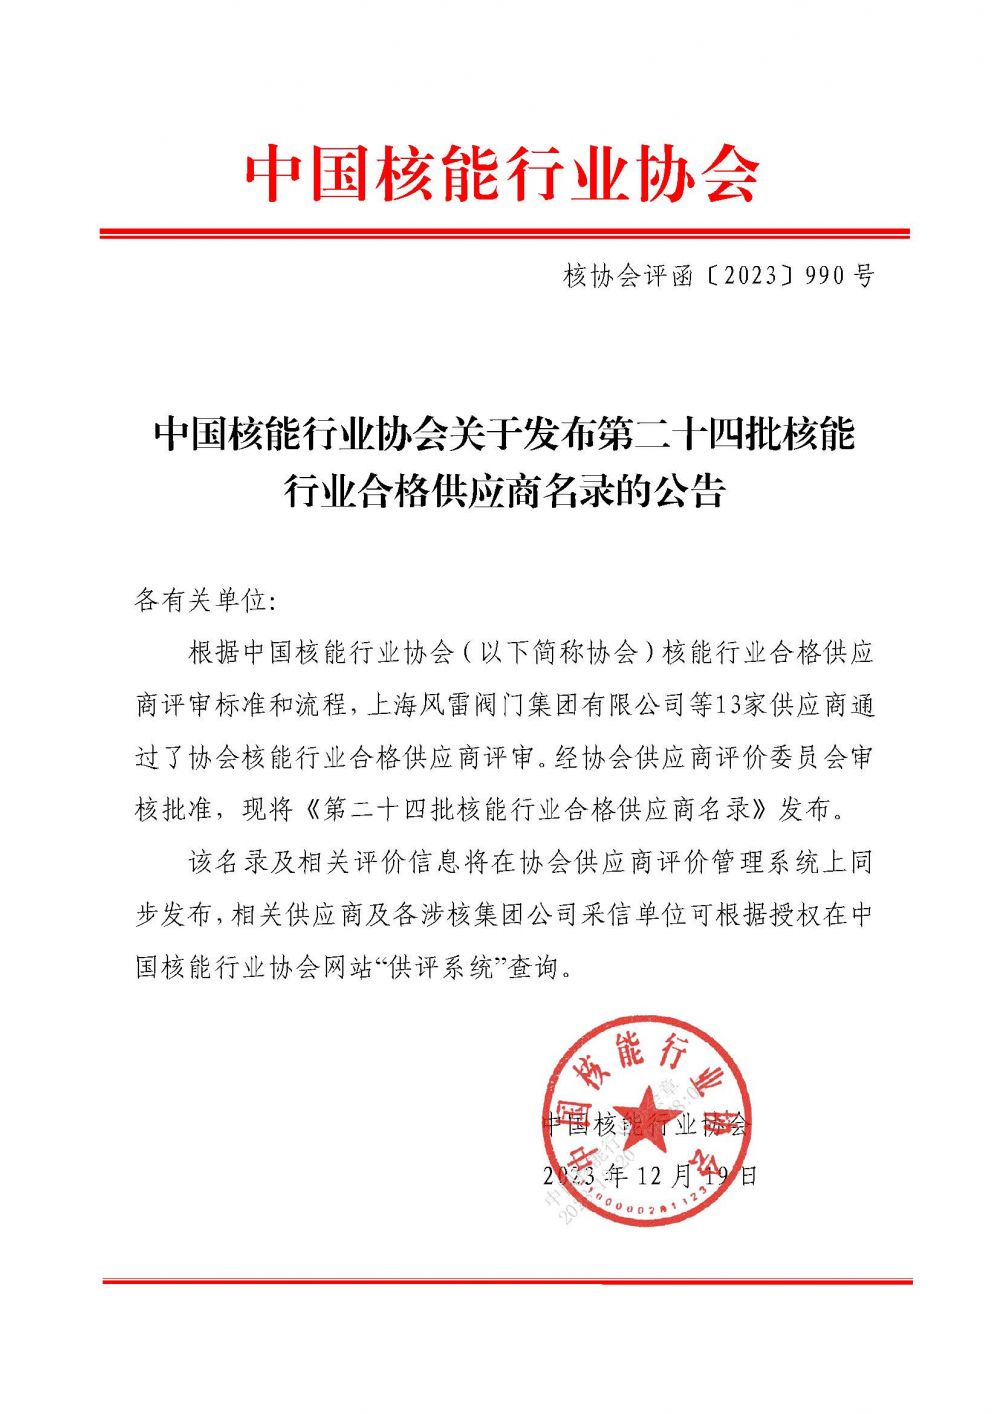 中国核能行业协会关于发布第二十四批核能行业合格供应商名录的公告_页面_1.jpg